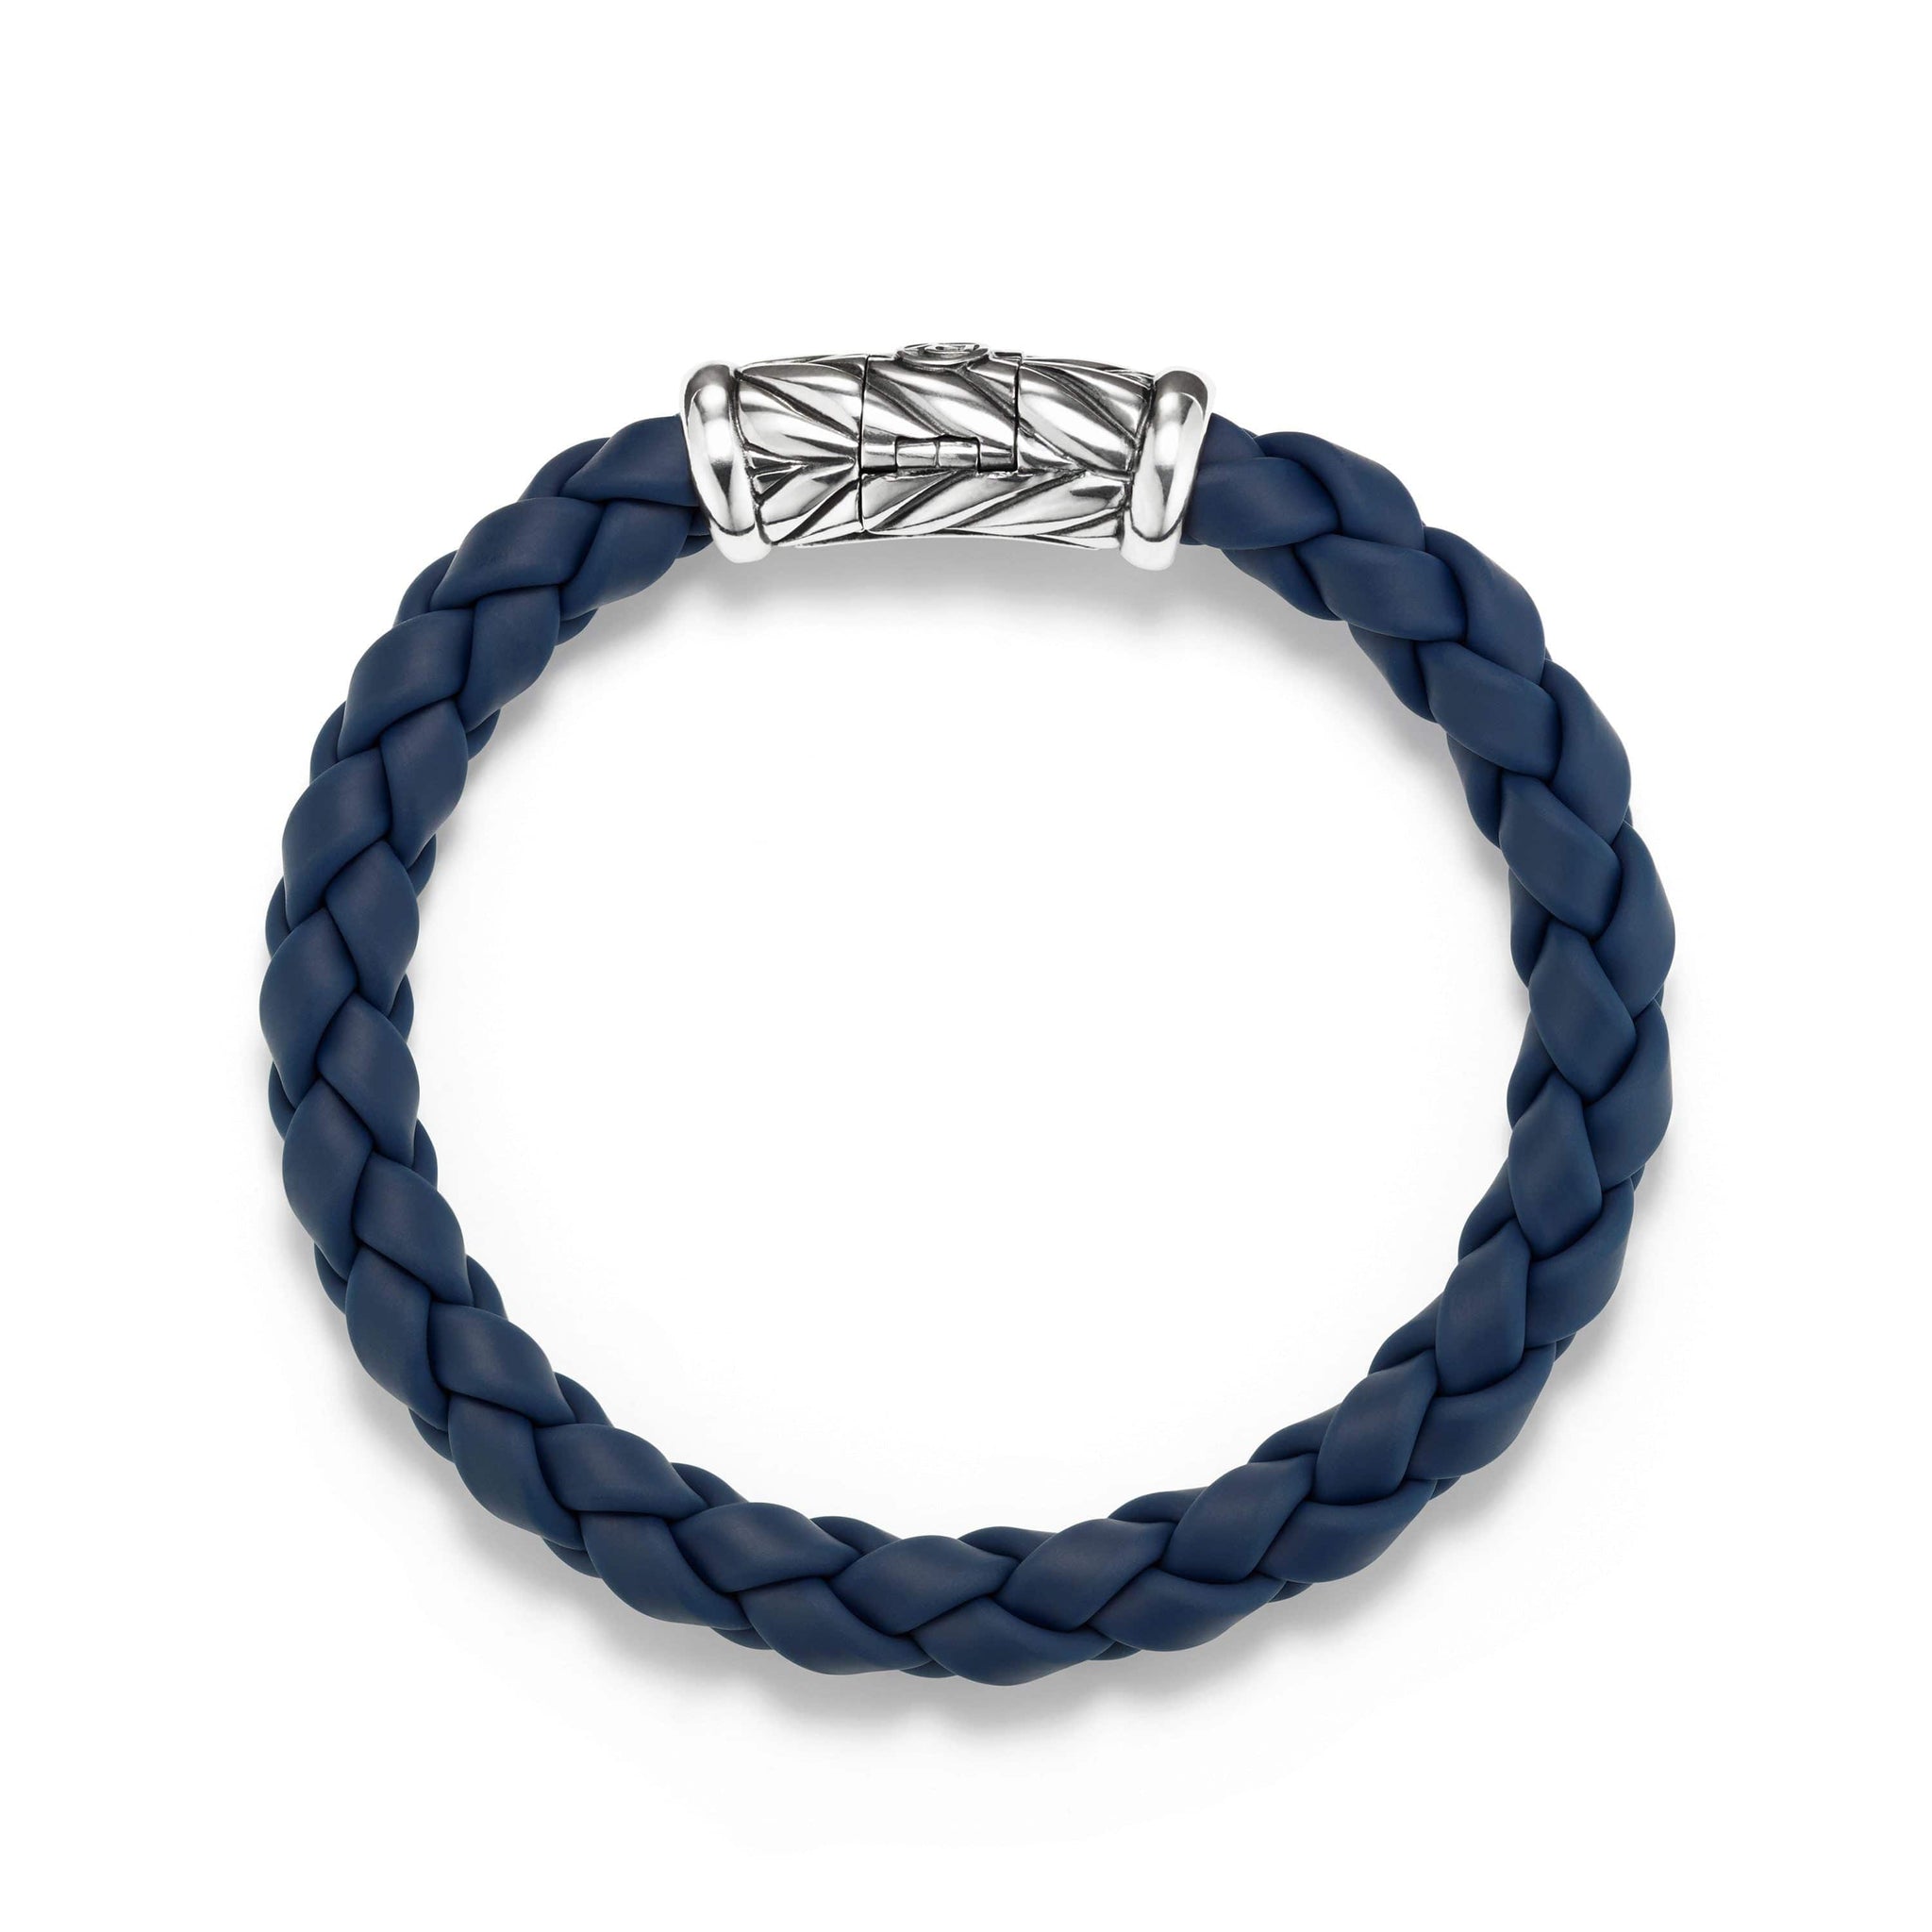 Chevron Rubber Weave Bracelet in Blue